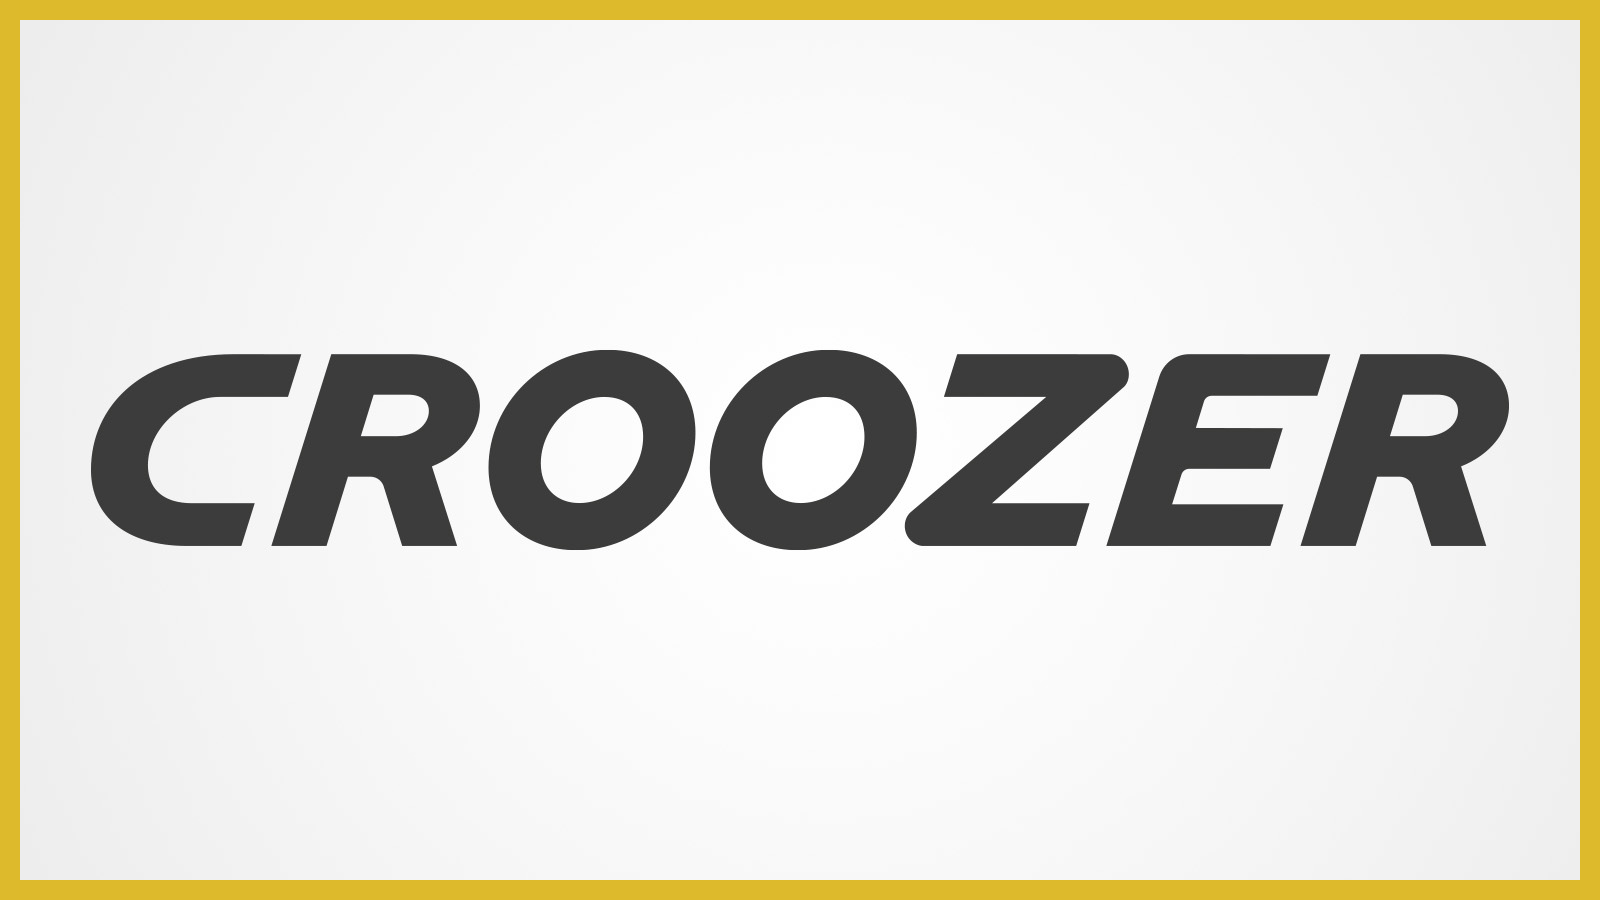 Das Logo der Marke Croozer